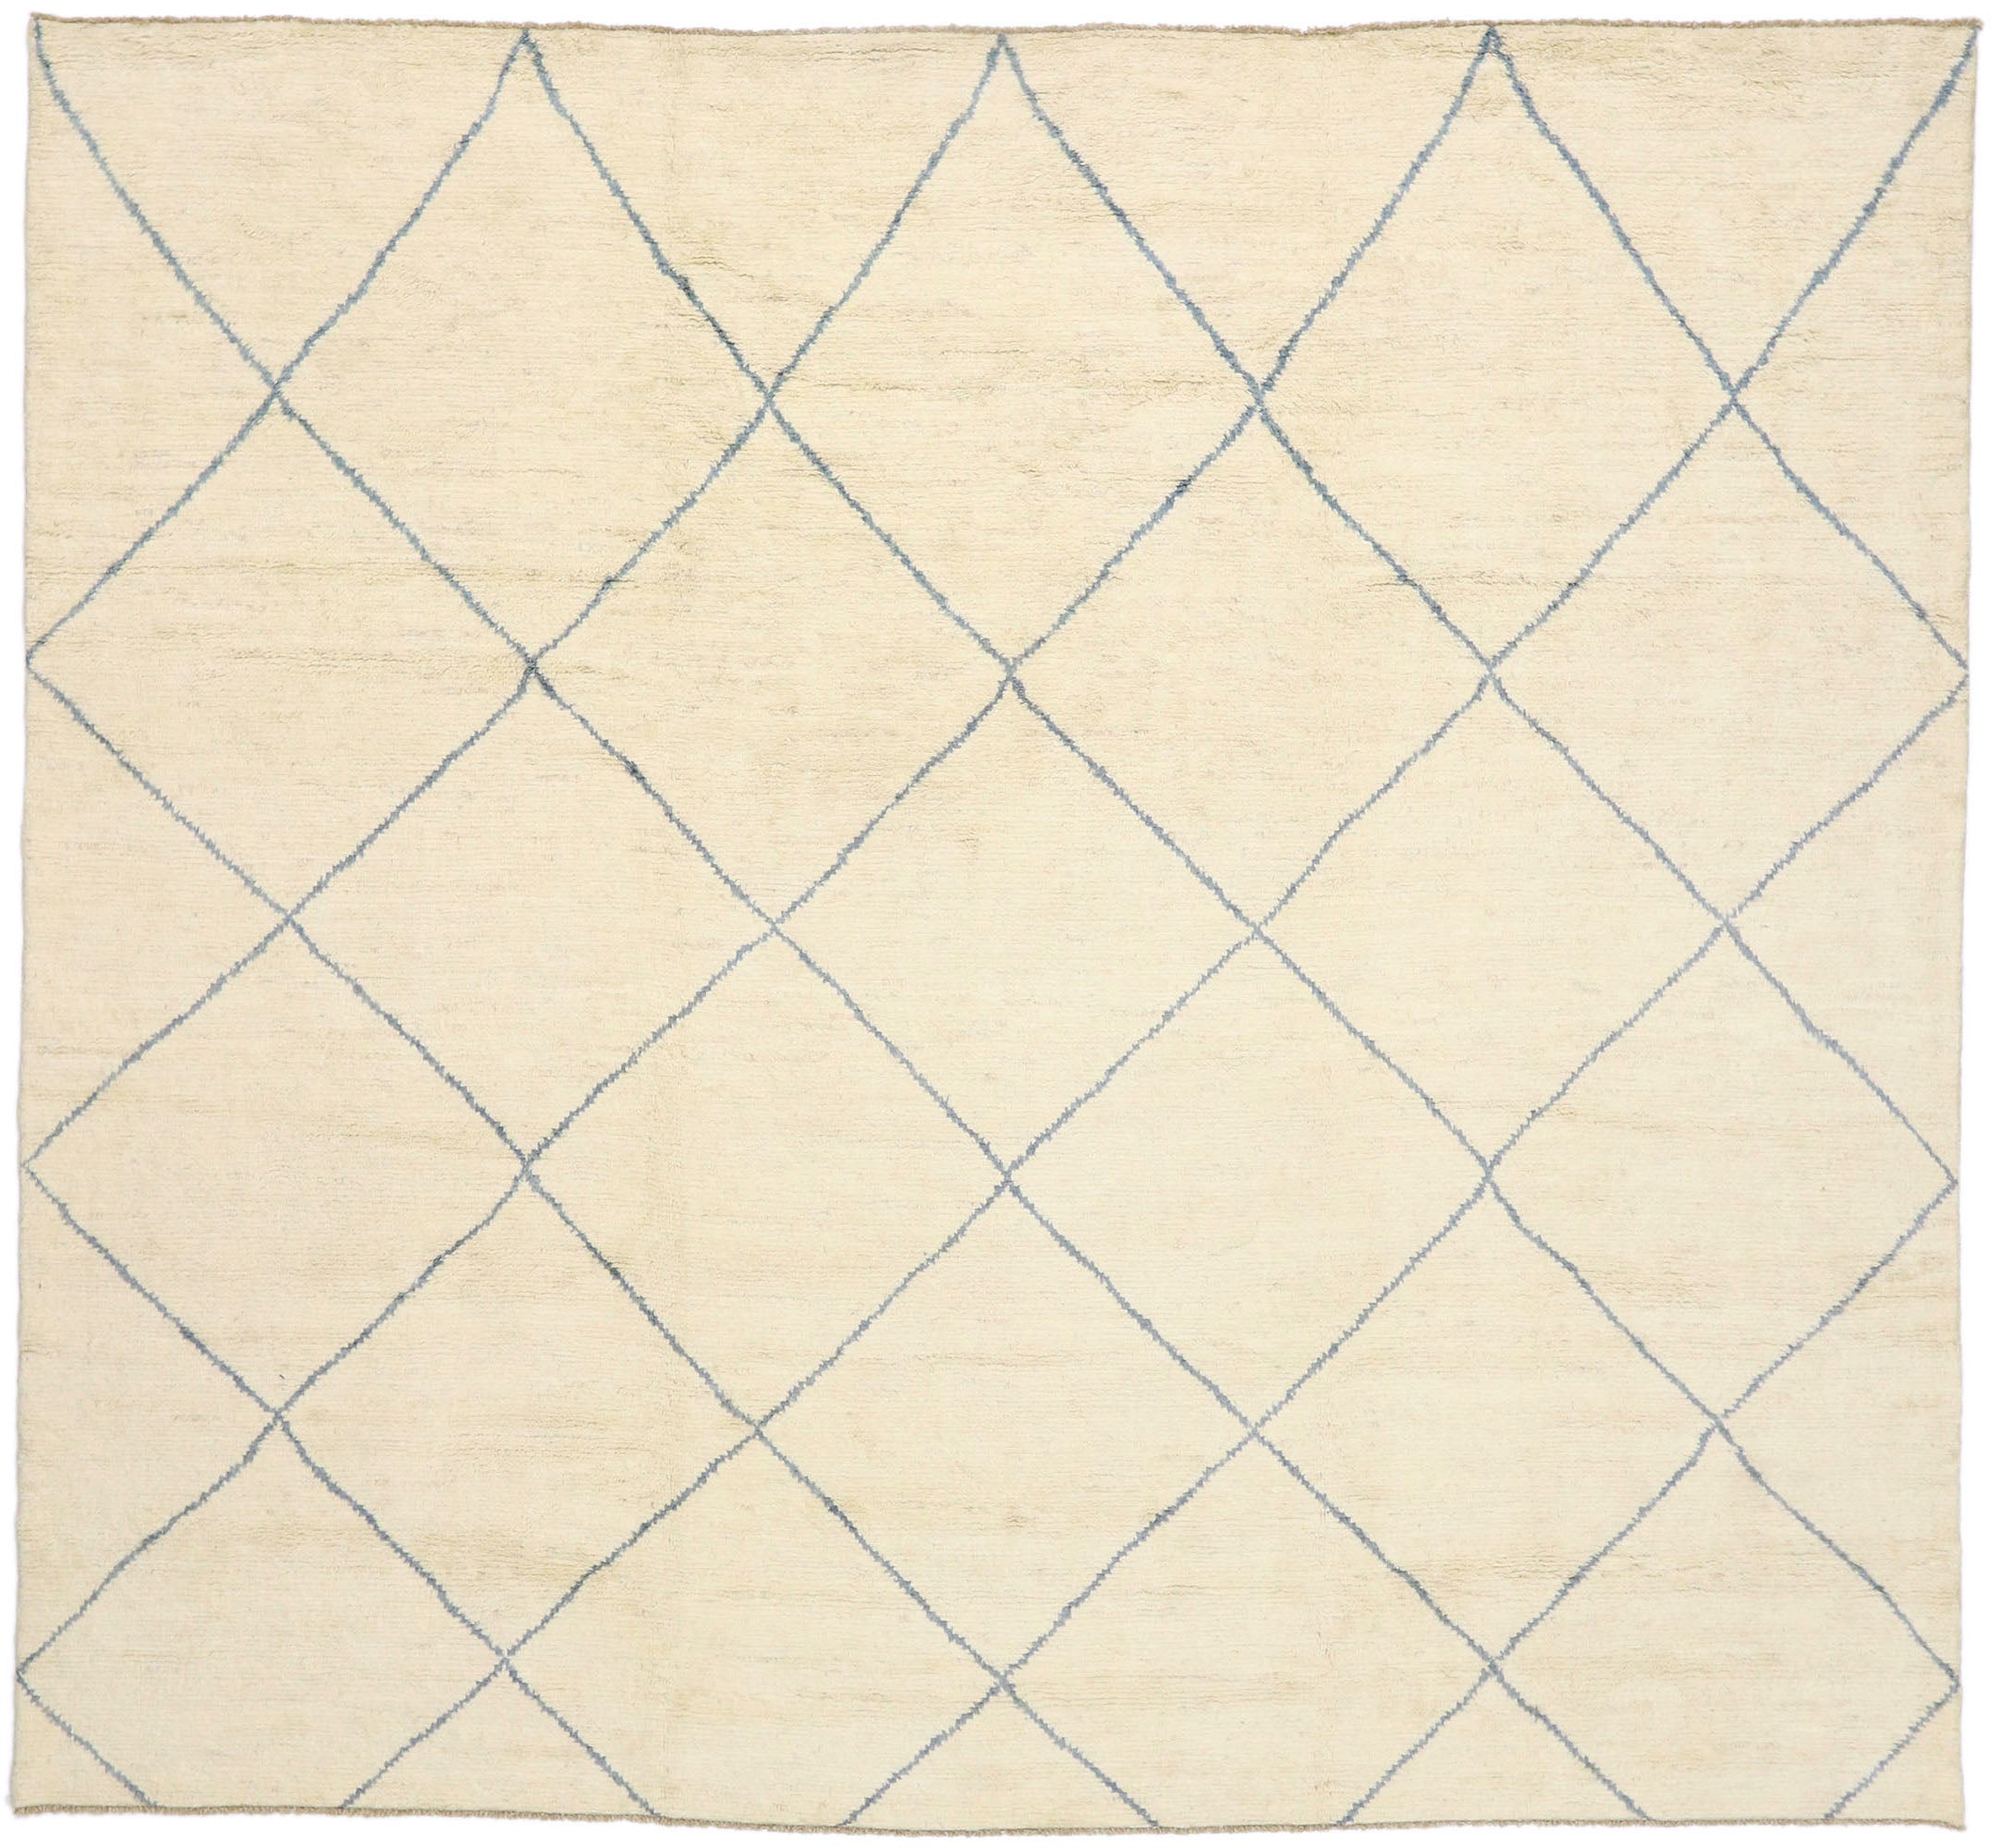 Großer organischer, moderner marokkanischer Teppich, minimalistisch, Shibui auf böhmischem Charme